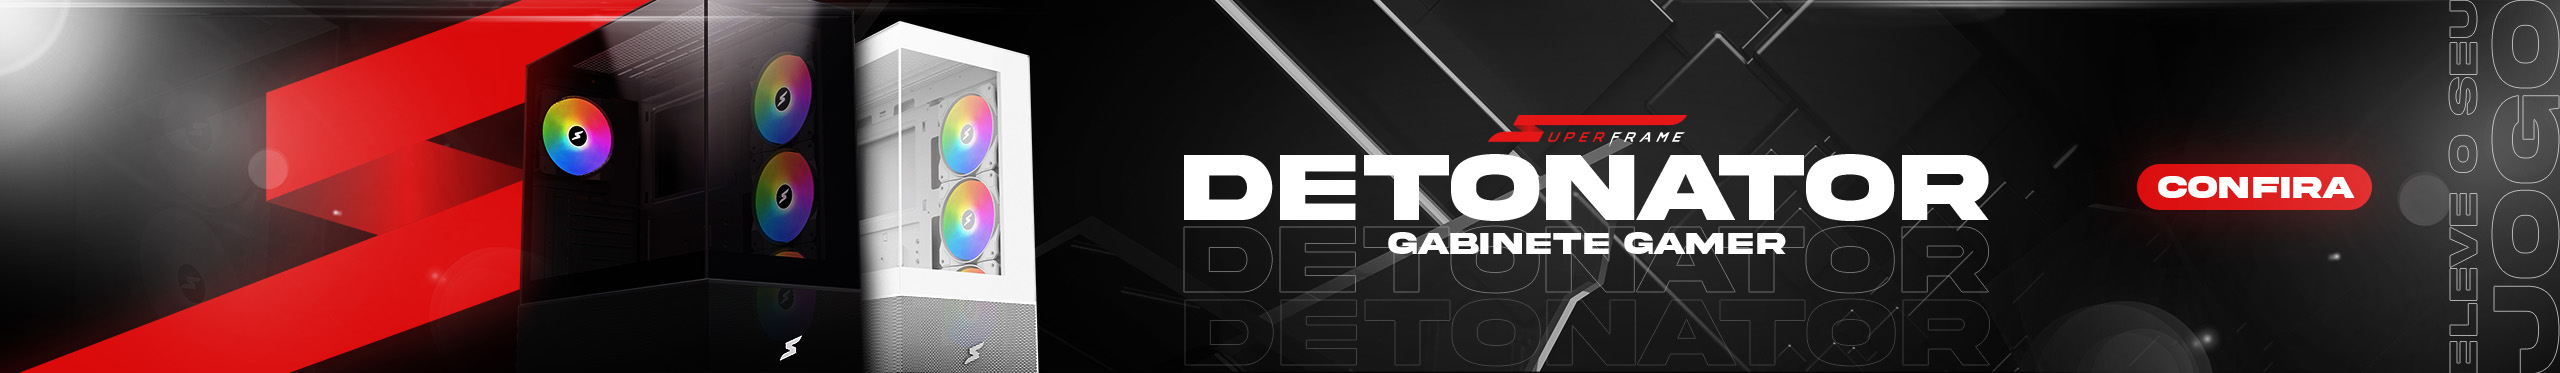 Gabinete Detonator | Detone no Game e no Estilo. Clica!